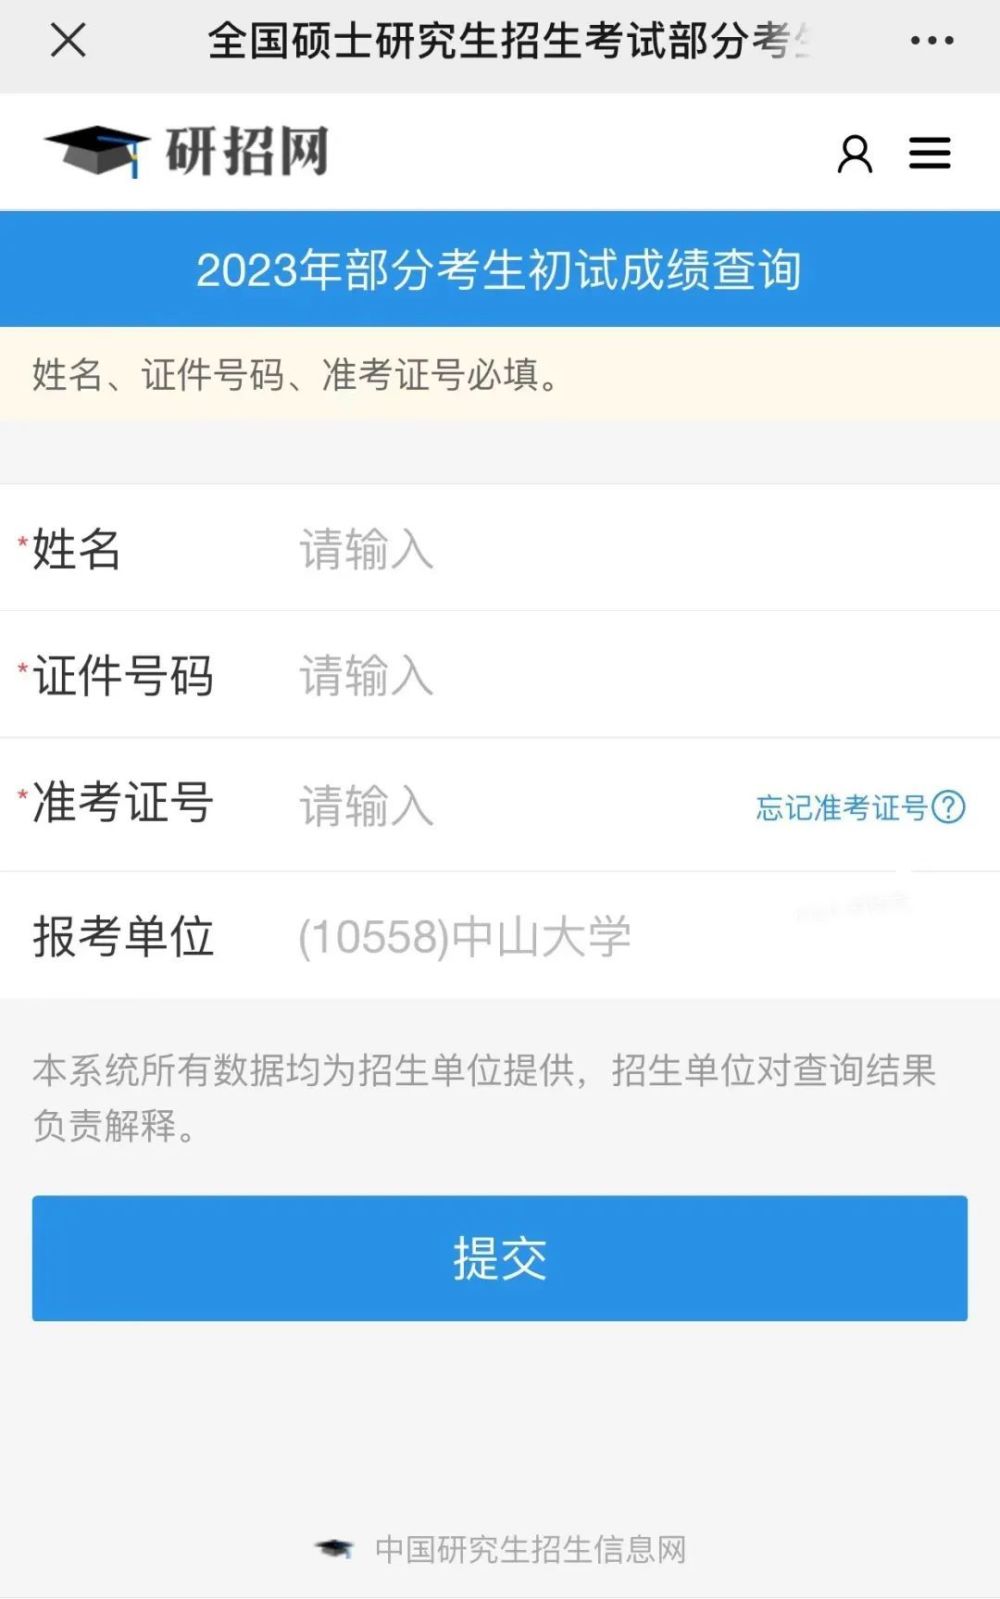 考研2023年考研初试成绩查询界面_腾讯新闻(2023己更新)插图